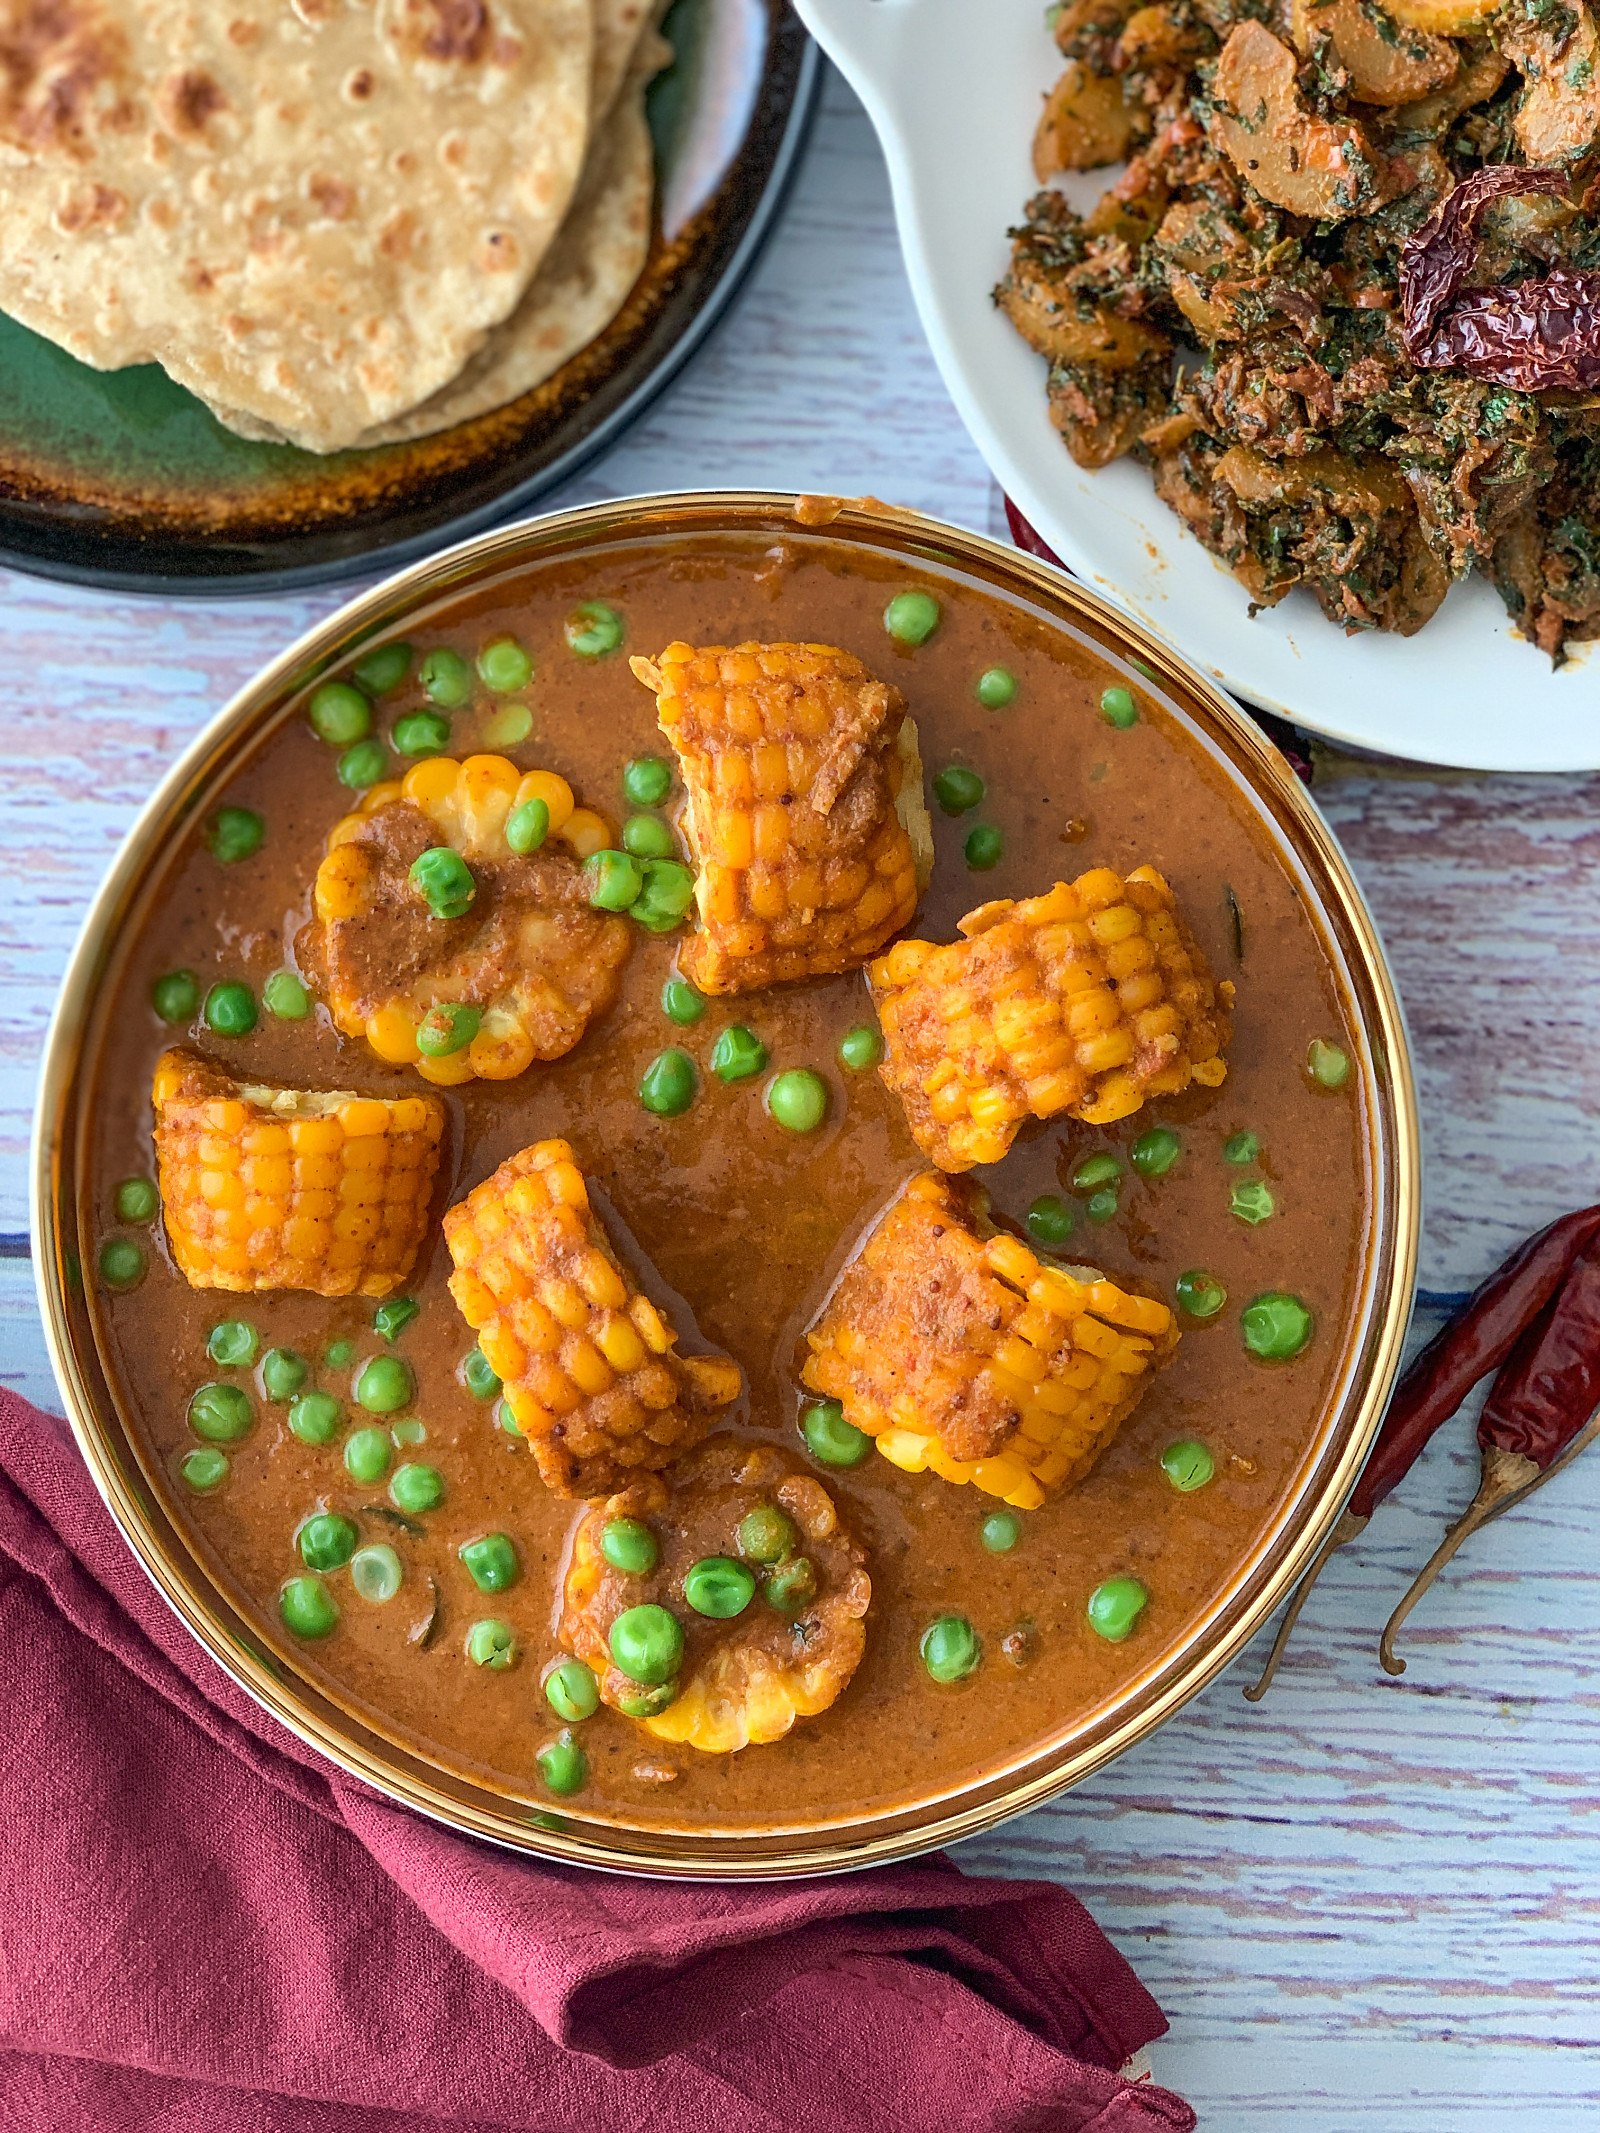 कॉर्न और मटर की करी रेसिपी - Corn And Peas Curry Recipe